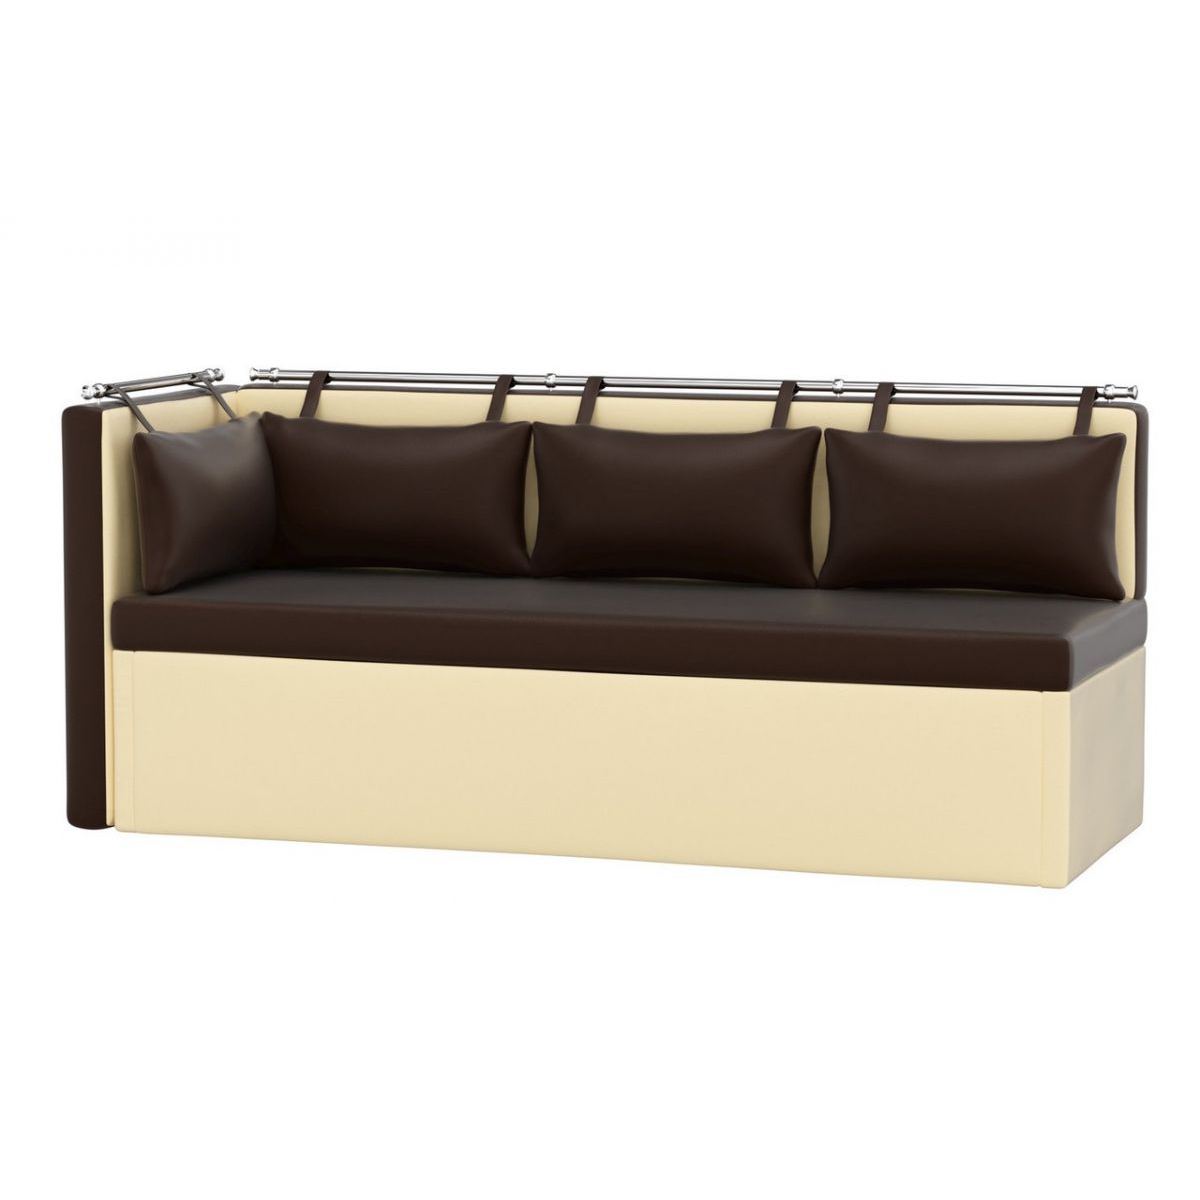 Кухонный диван Метро со спальным местом экокожа цвет Бежевый/Коричневый